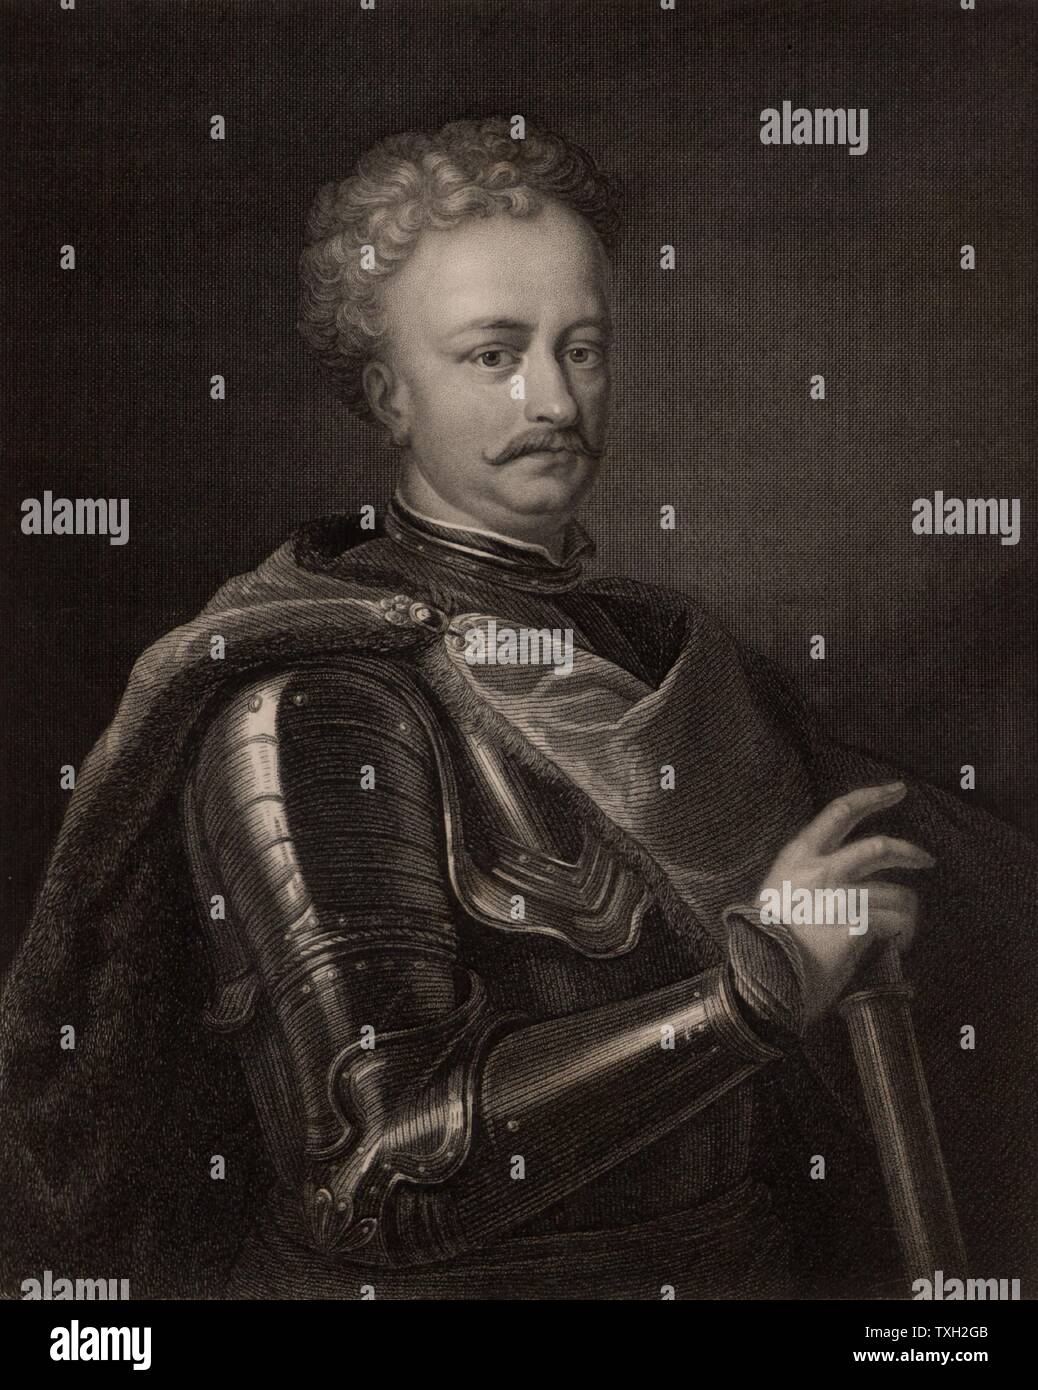 Jean Sobieski (1629-1696), Jean III, roi de Pologne à partir de 1674. Guerrier et homme d'État polonais. À partir de 'La galerie de portraits" par Charles Knight (Londres, 1834). La gravure. Banque D'Images